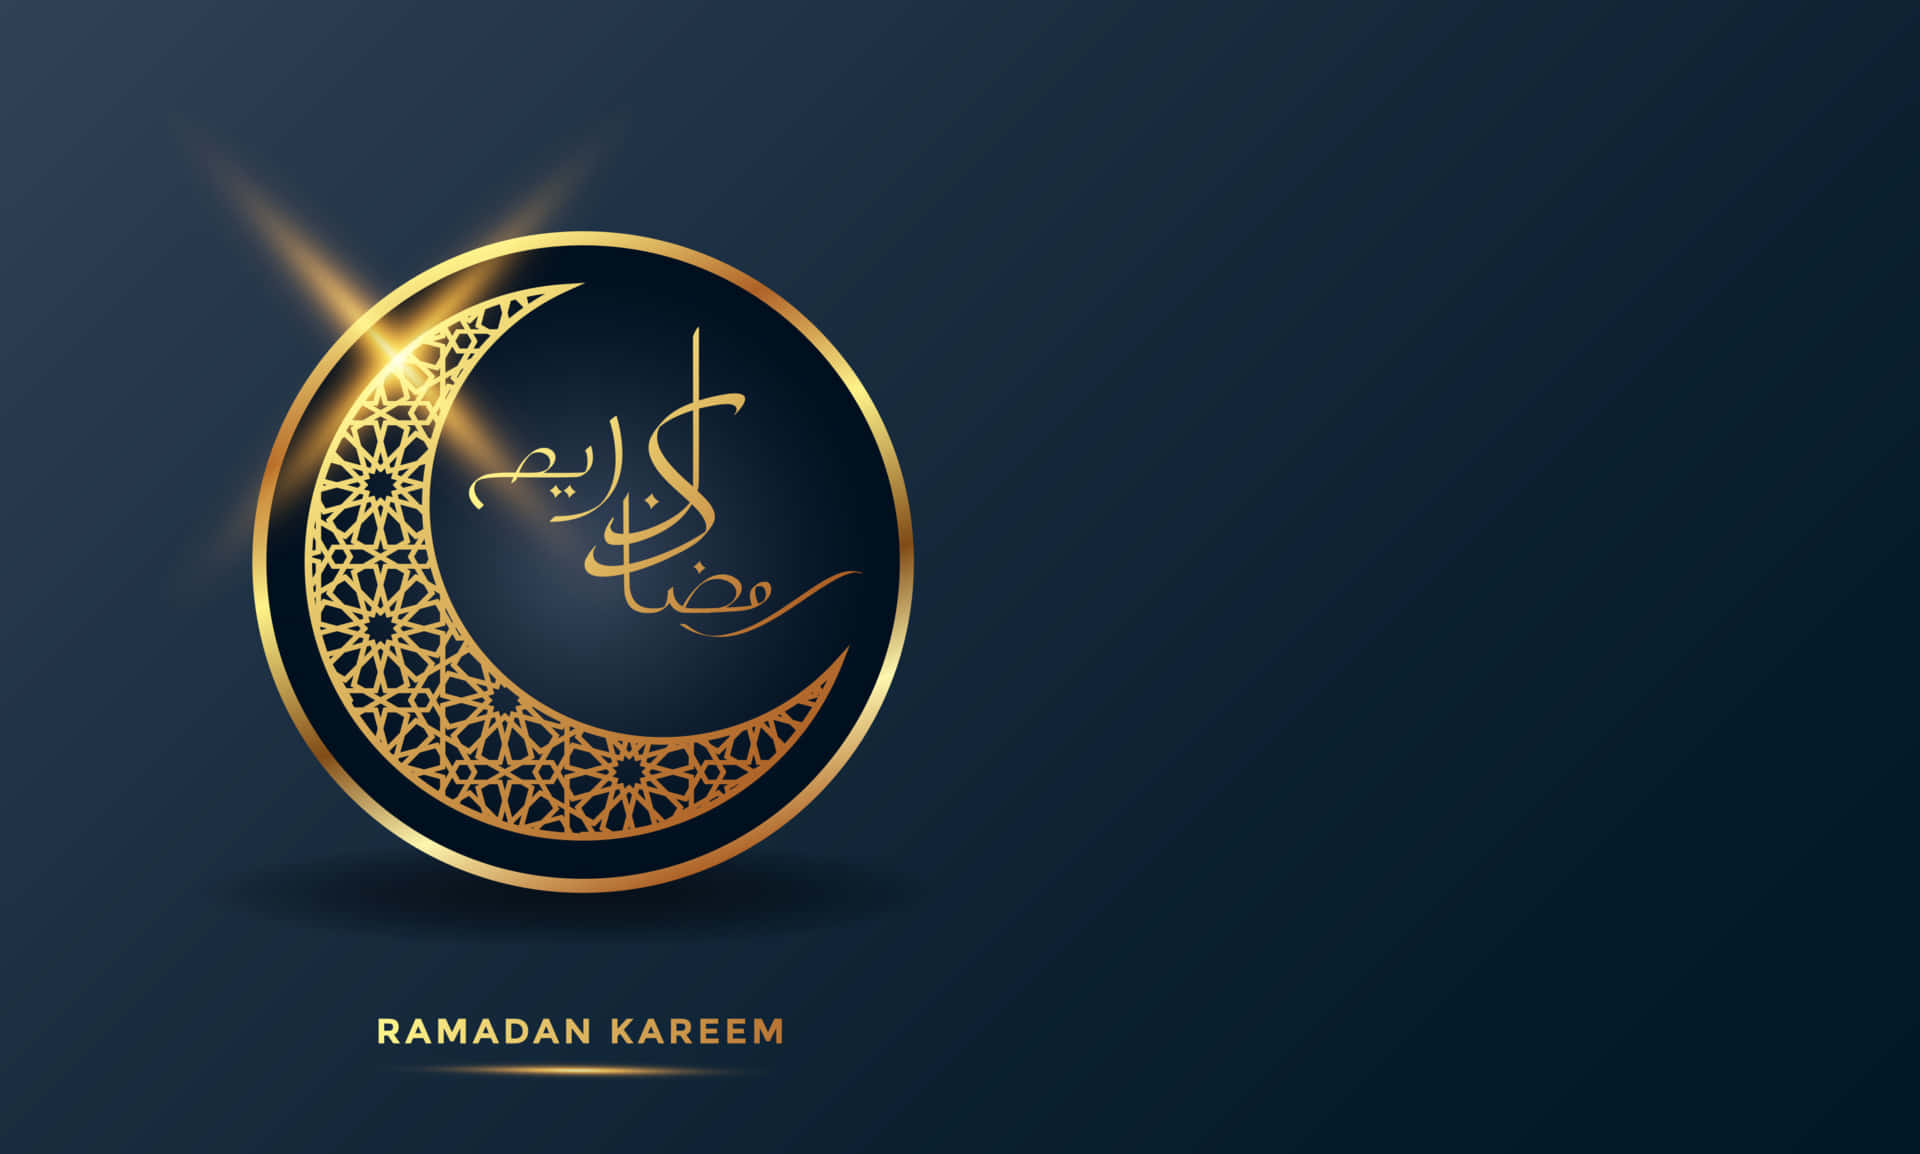 Celebrate the gift of Ramadan